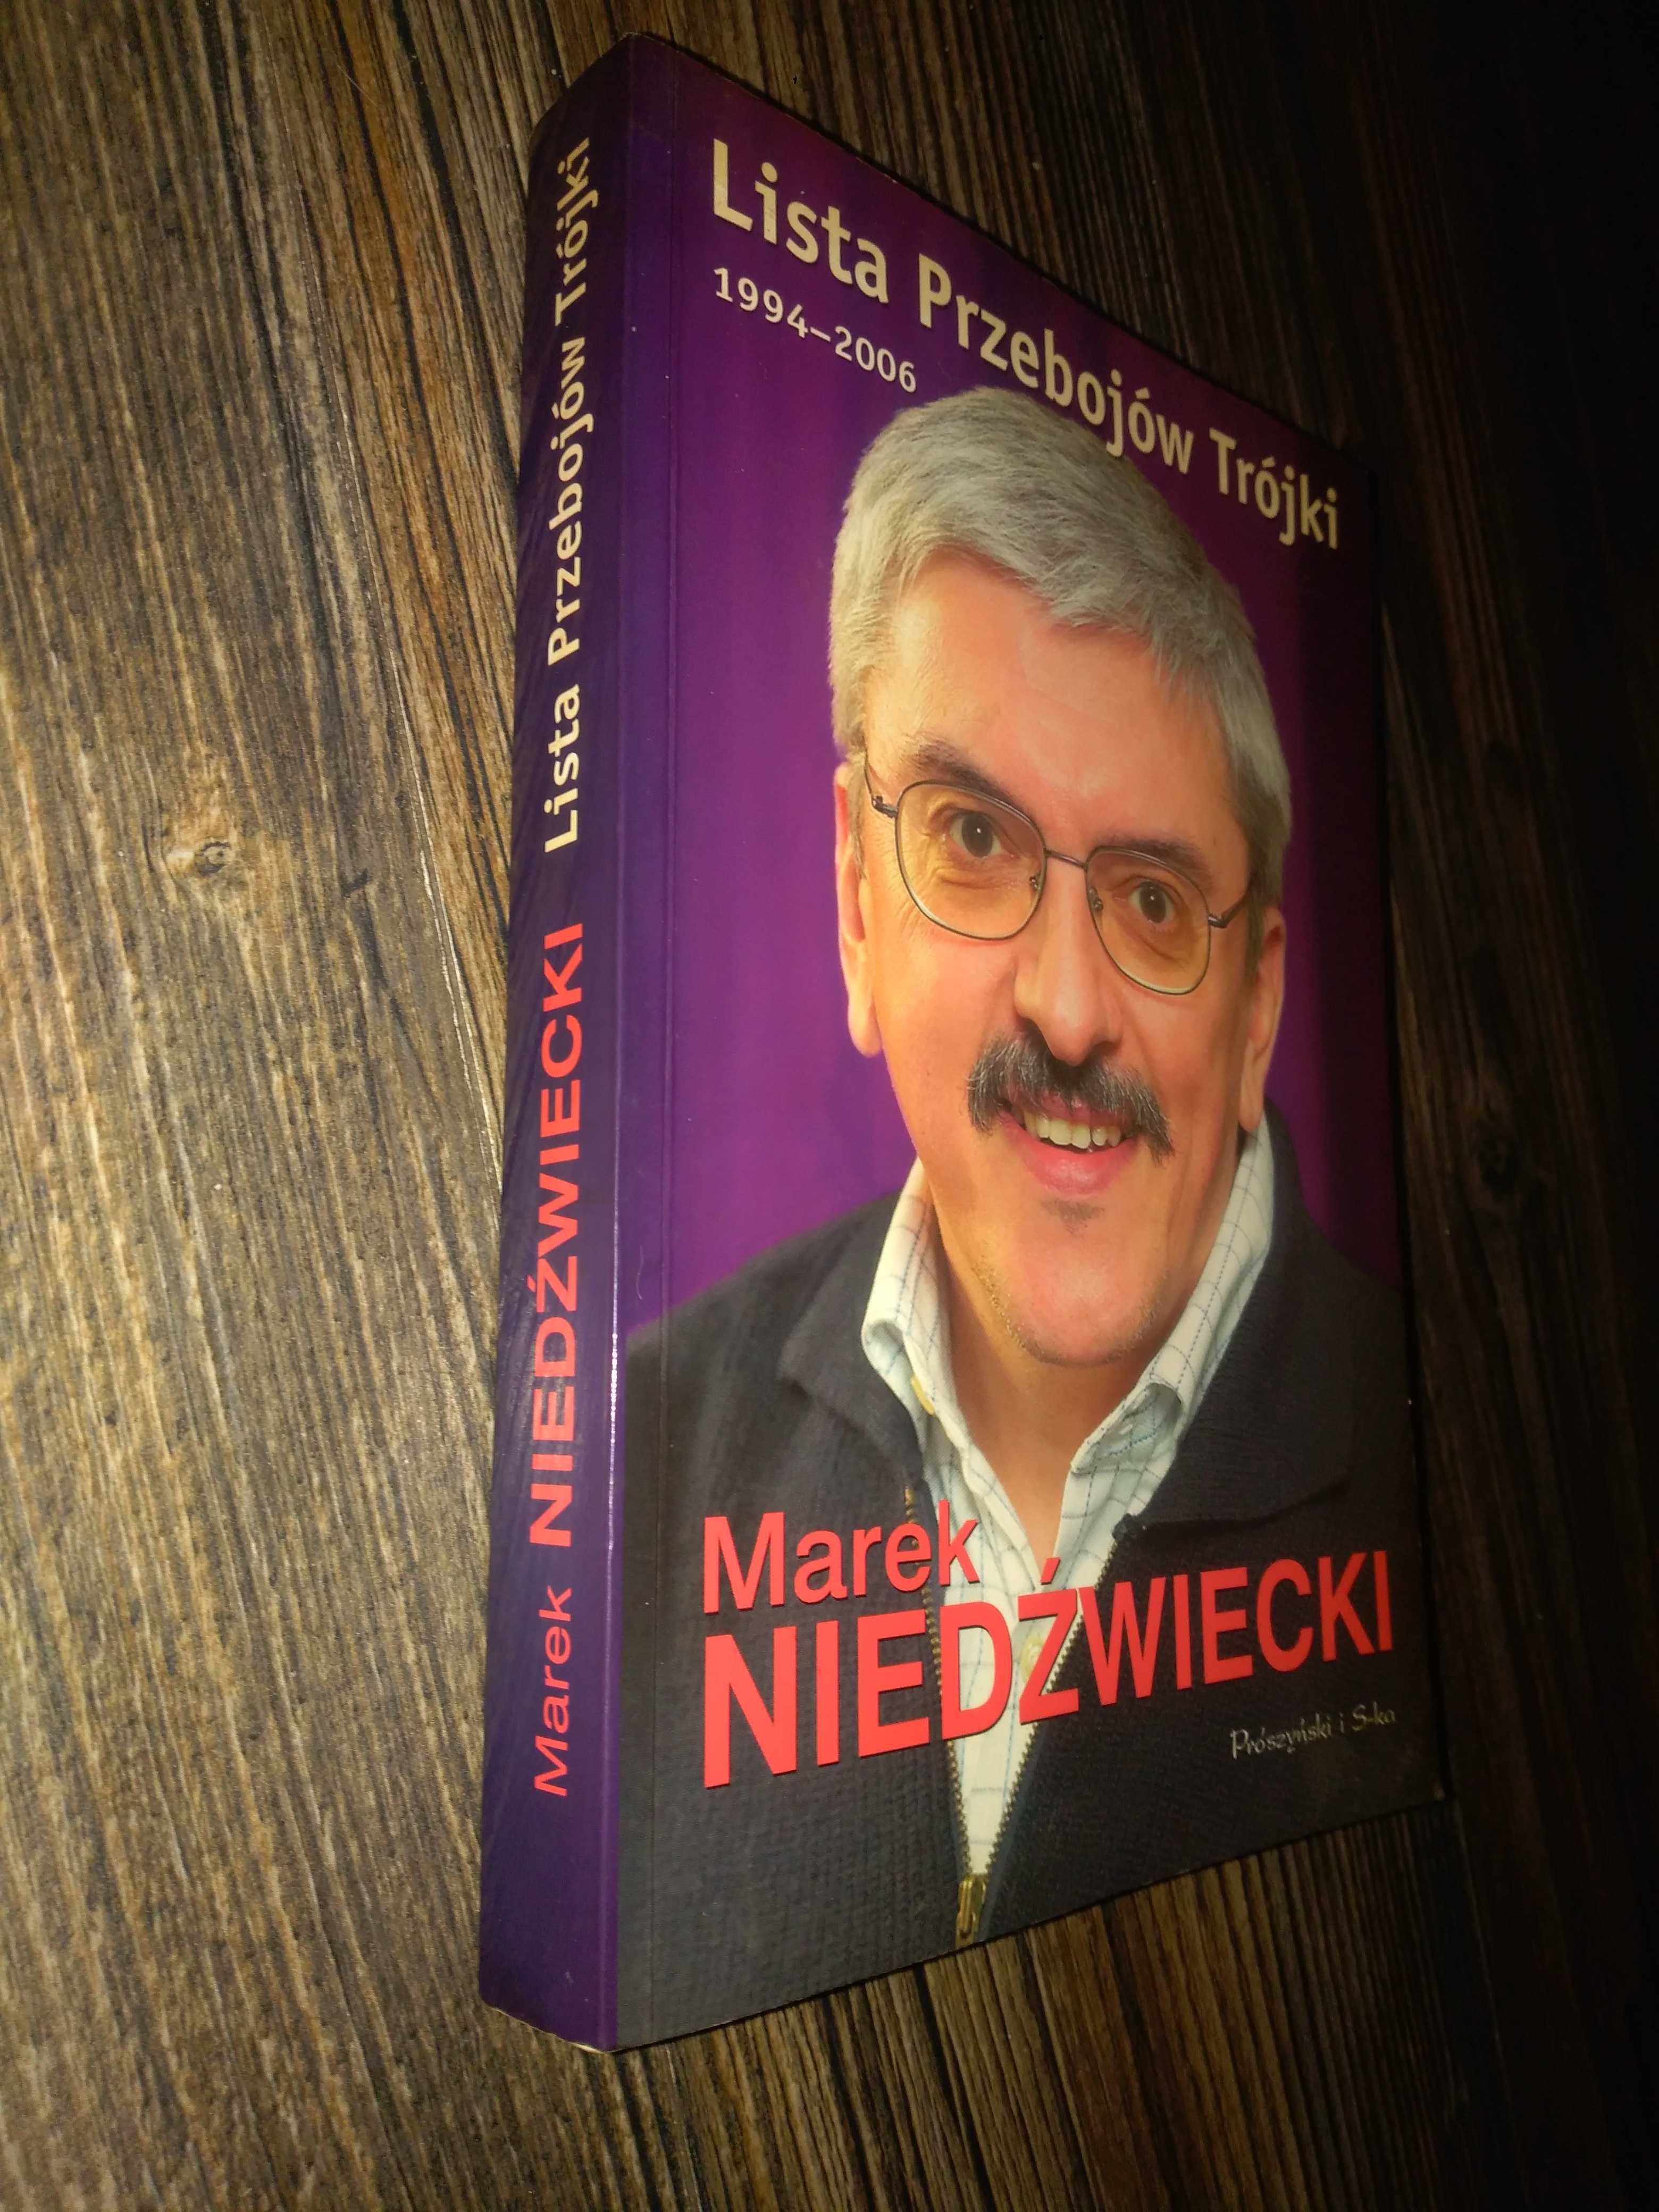 Marek Niedźwiecki. Lista Przebojów Trójki 1994 - 2006.